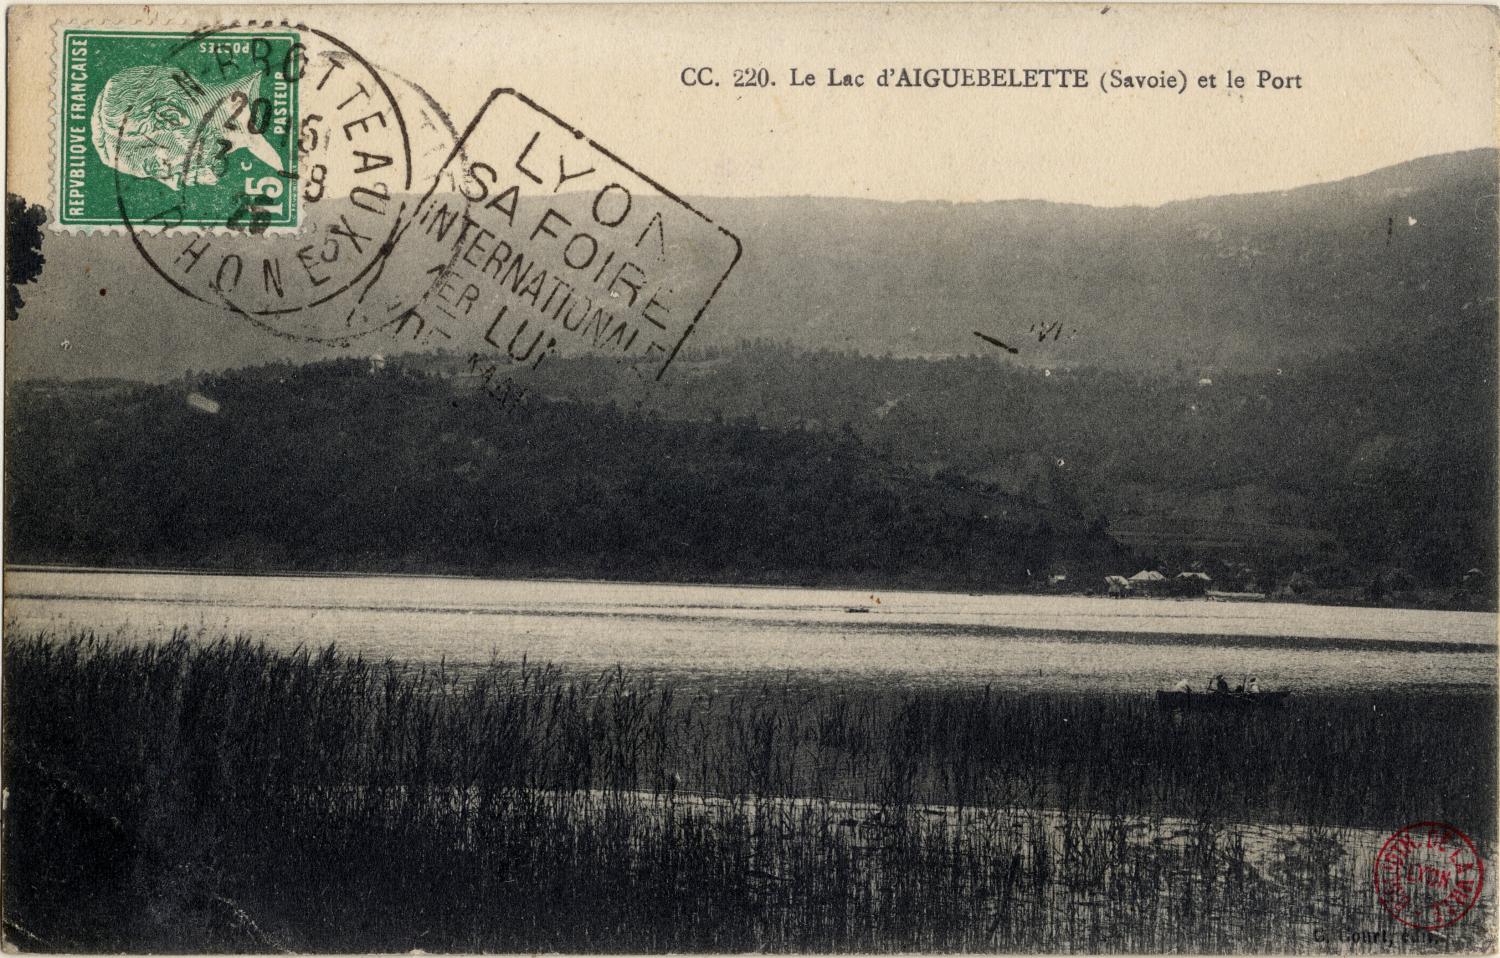 Le Lac d'Aiguebelette (Savoie) et le Port